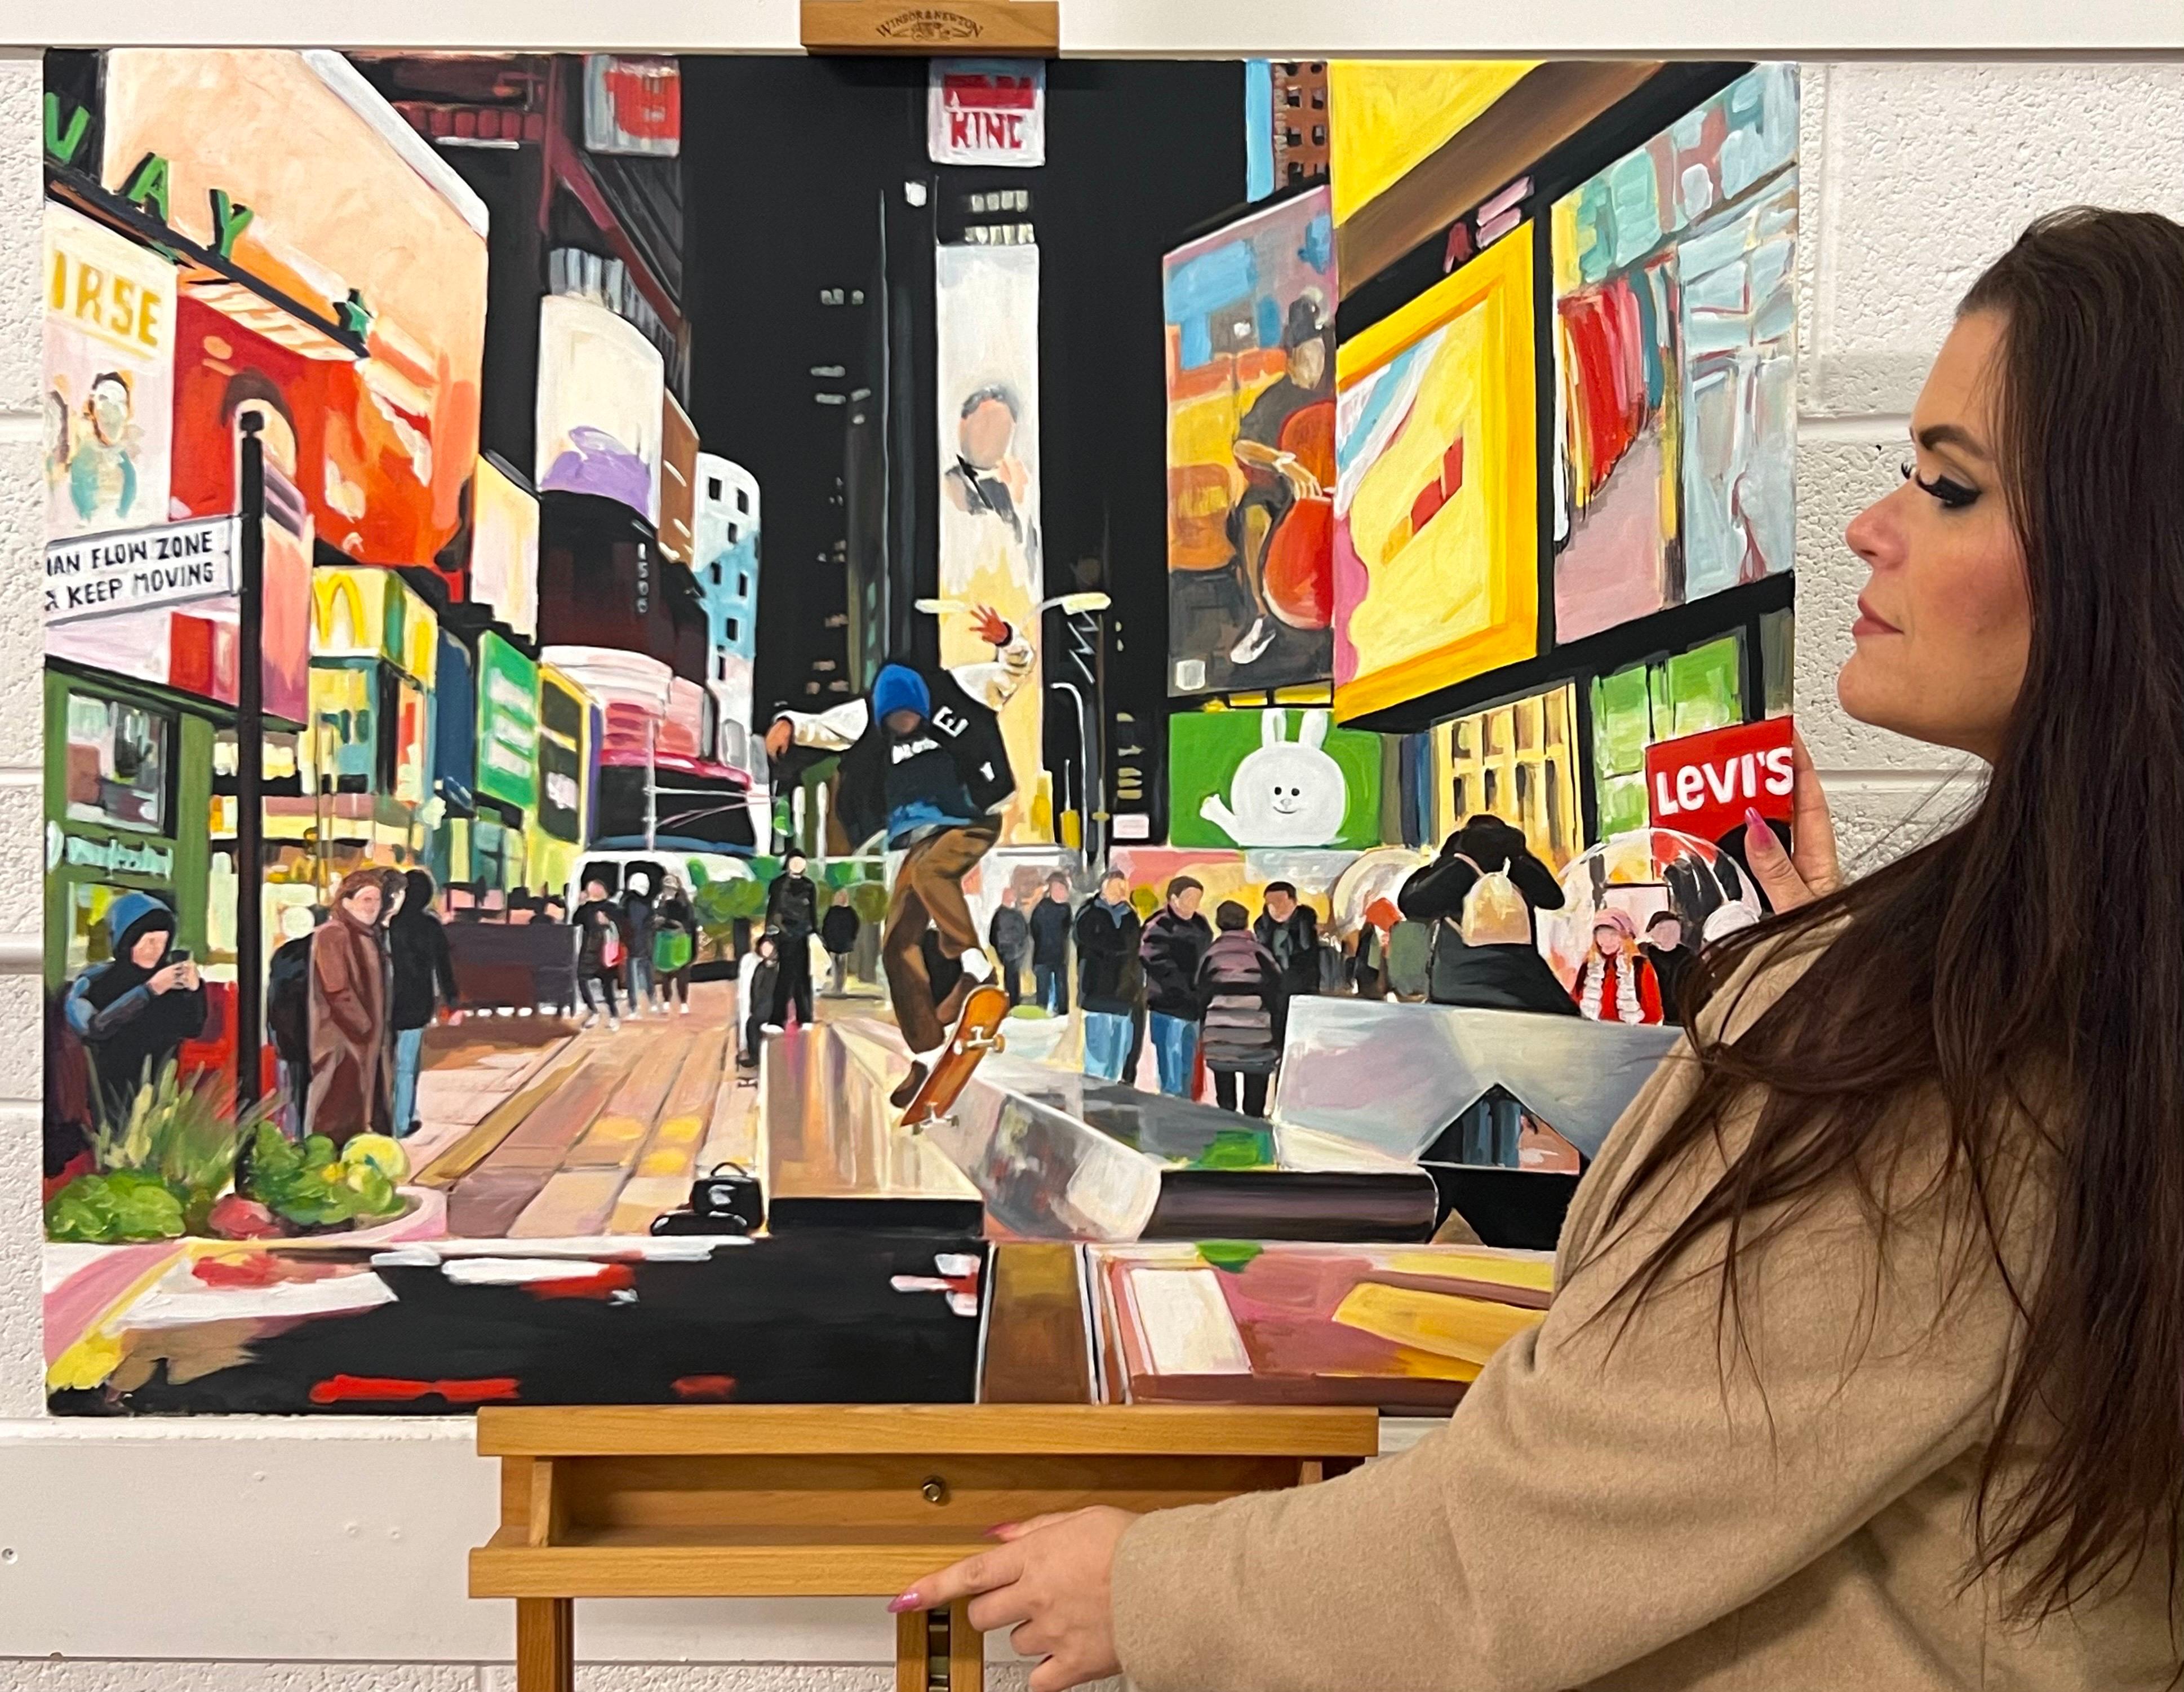 Skate Boarder Times Square New York City après la pluie d'un artiste urbain britannique - Painting de Angela Wakefield